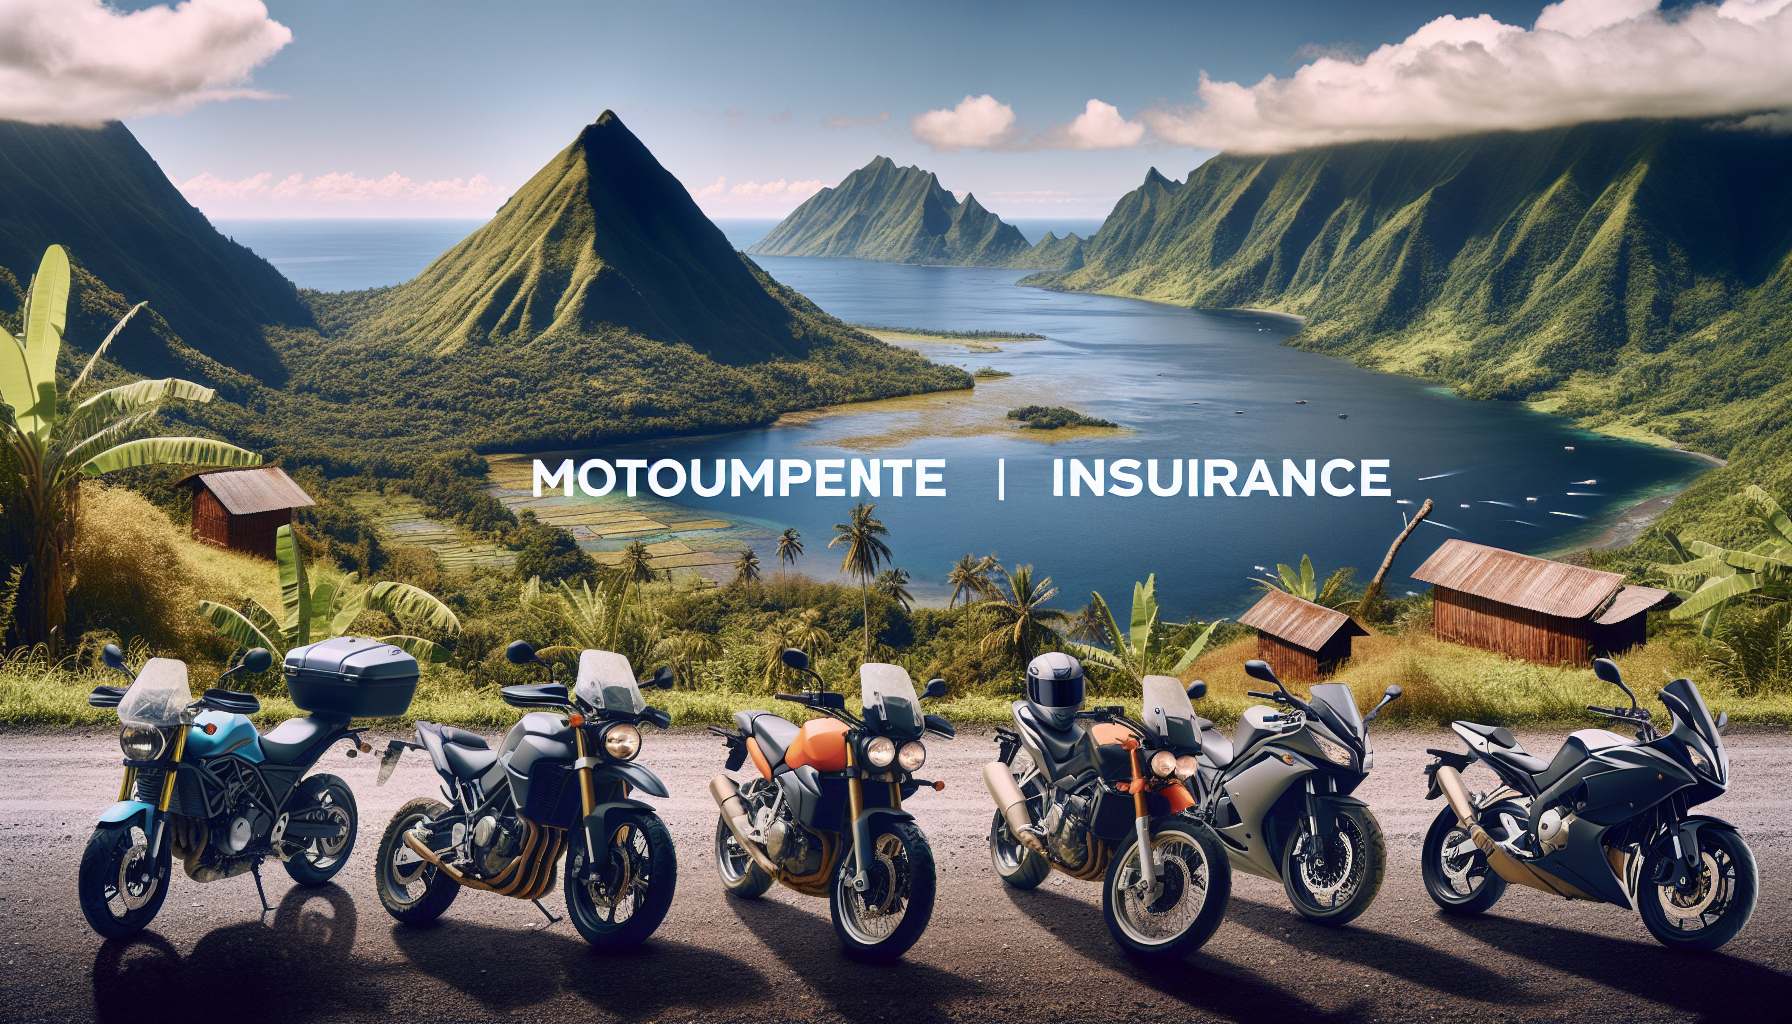 découvrez les différents types d'assurance moto à la réunion avec des offres adaptées à vos besoins. trouvez la meilleure assurance moto à la réunion pour rouler en toute sécurité.